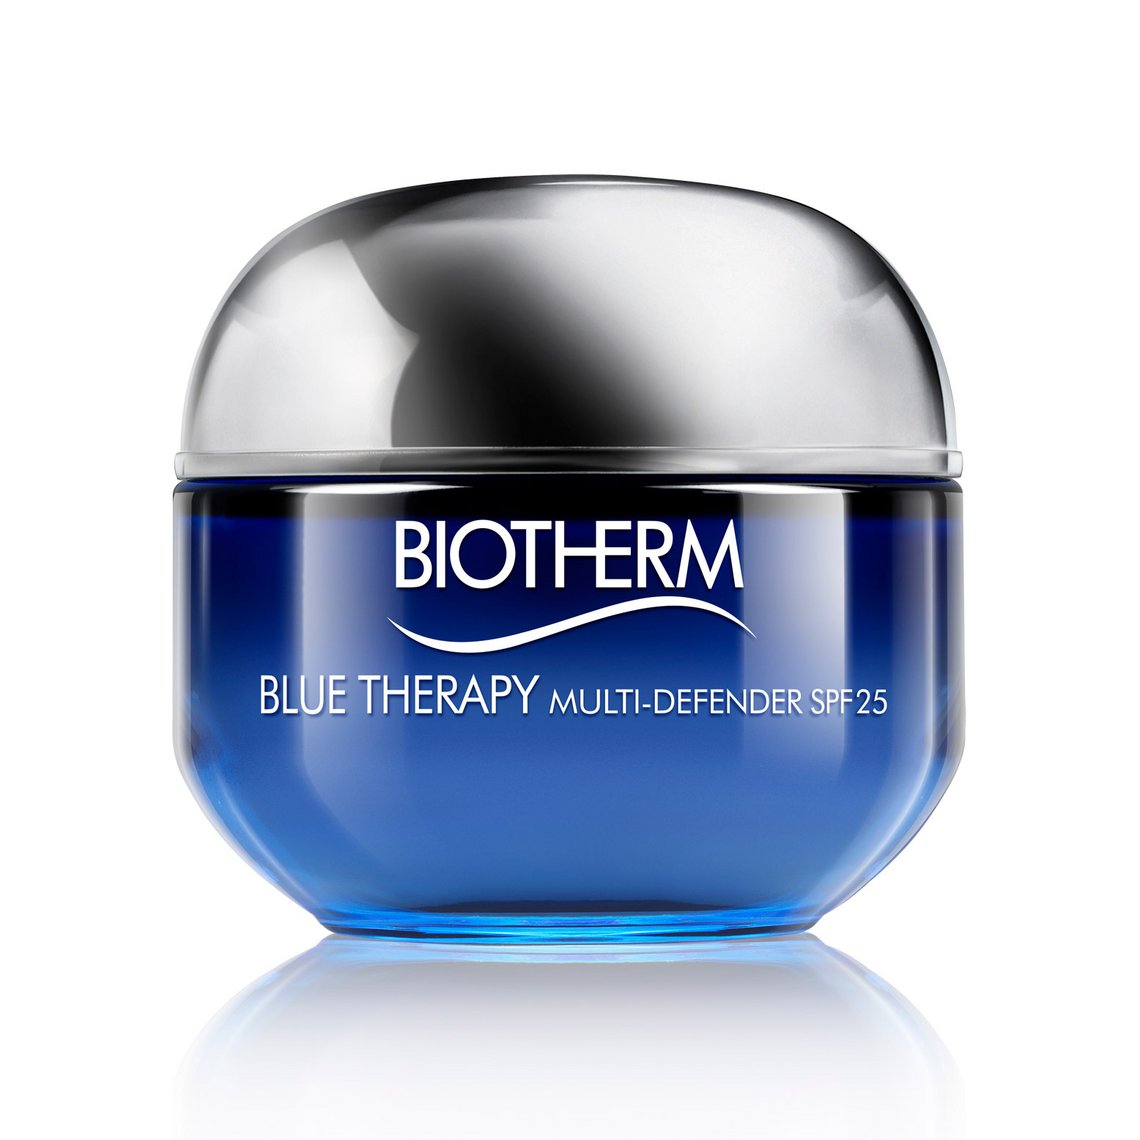 Blue Therapy Multi-Defender SPF 25 von Biotherm